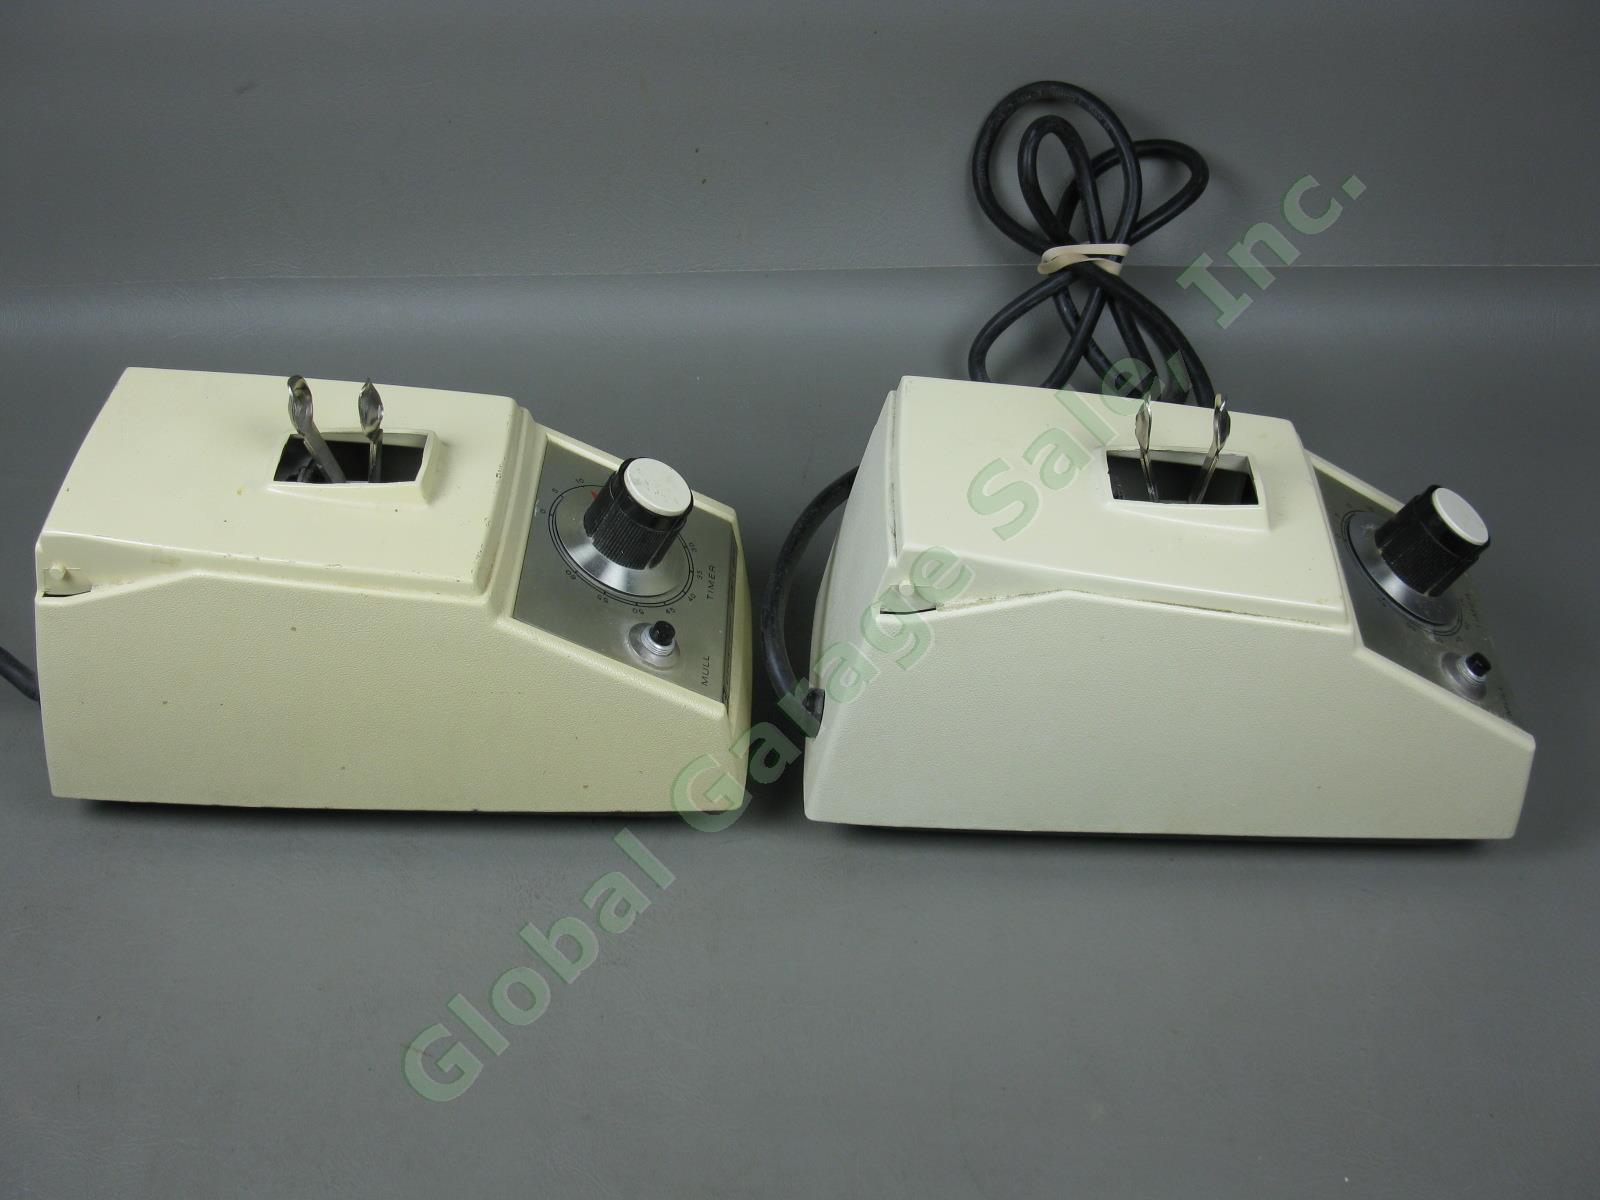 2x Crescent WIG-L-BUG SC-40 Dental Amalgamator Mixer Shakers Lot No Covers Lids 3